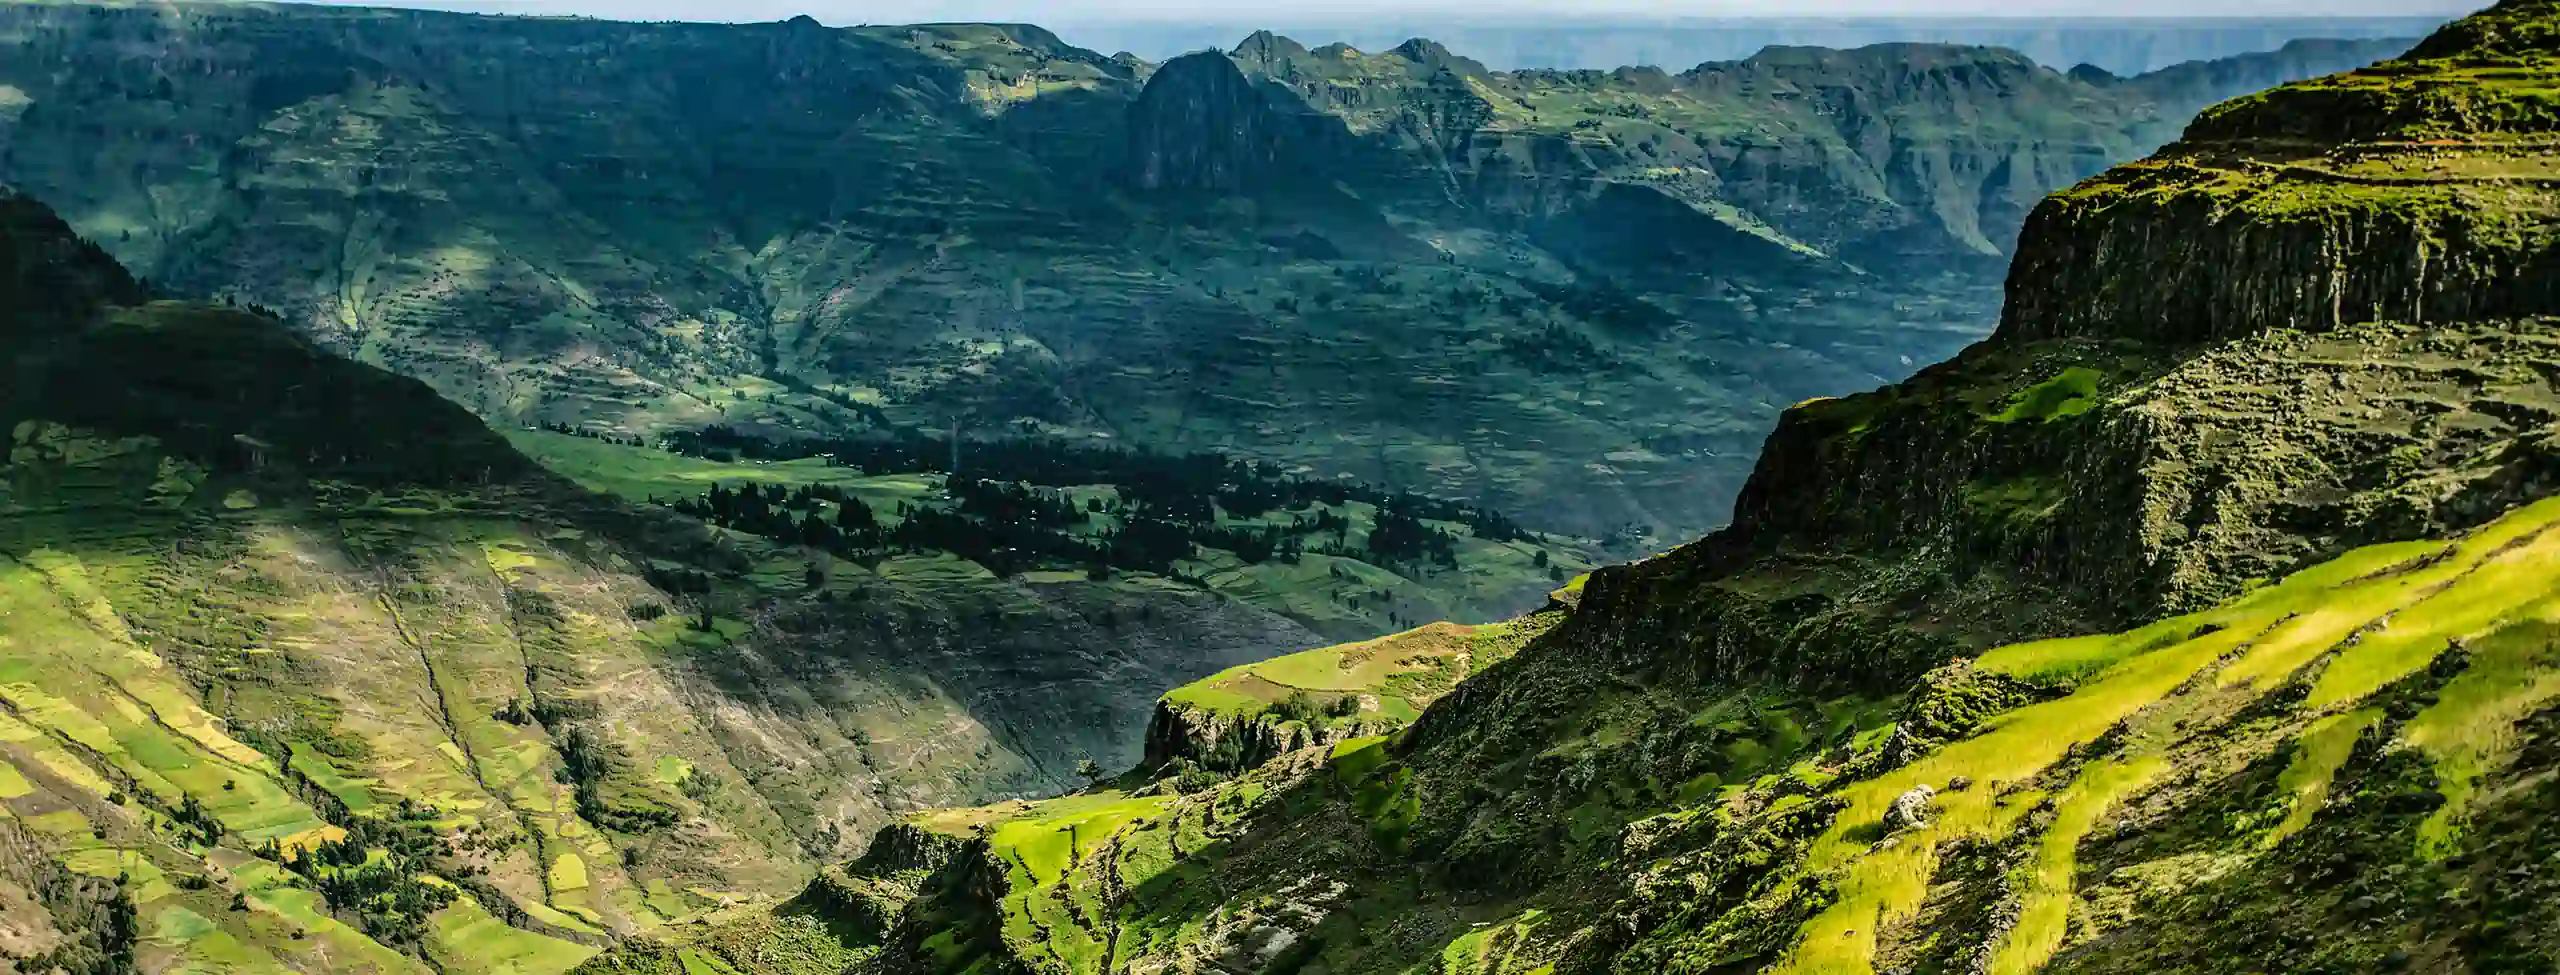 Ethiopia Mountains